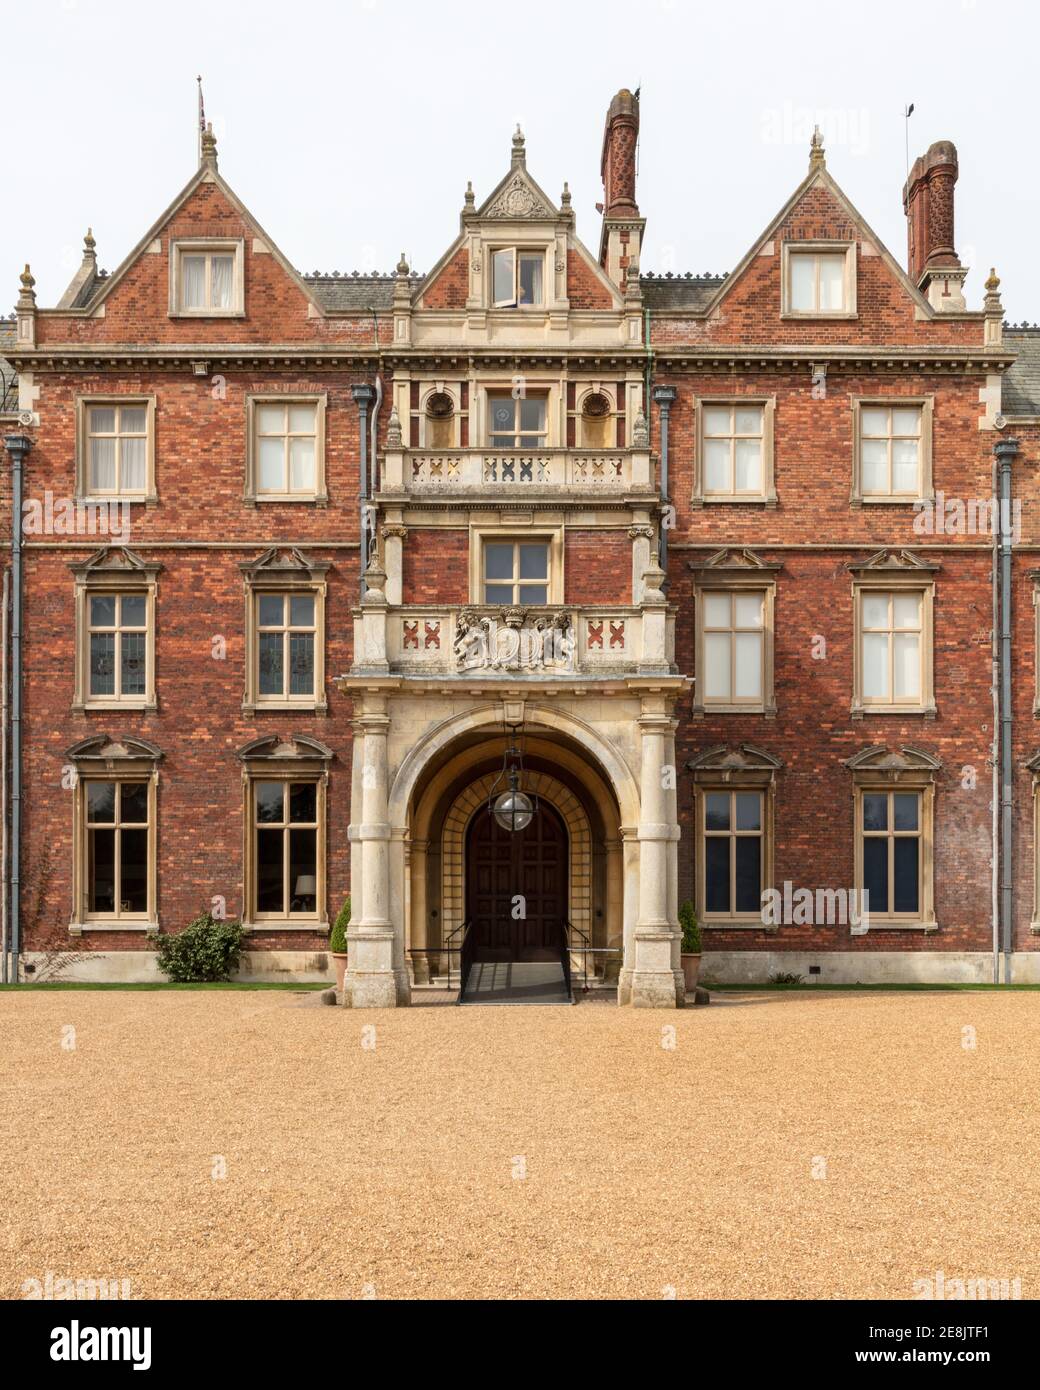 UK, Norfolk, Sandringham Estate, 2019, April, 23: East Front Entrance Detail of the house, Sandringham House, Queen Elizabeth II's country residence i Stock Photo